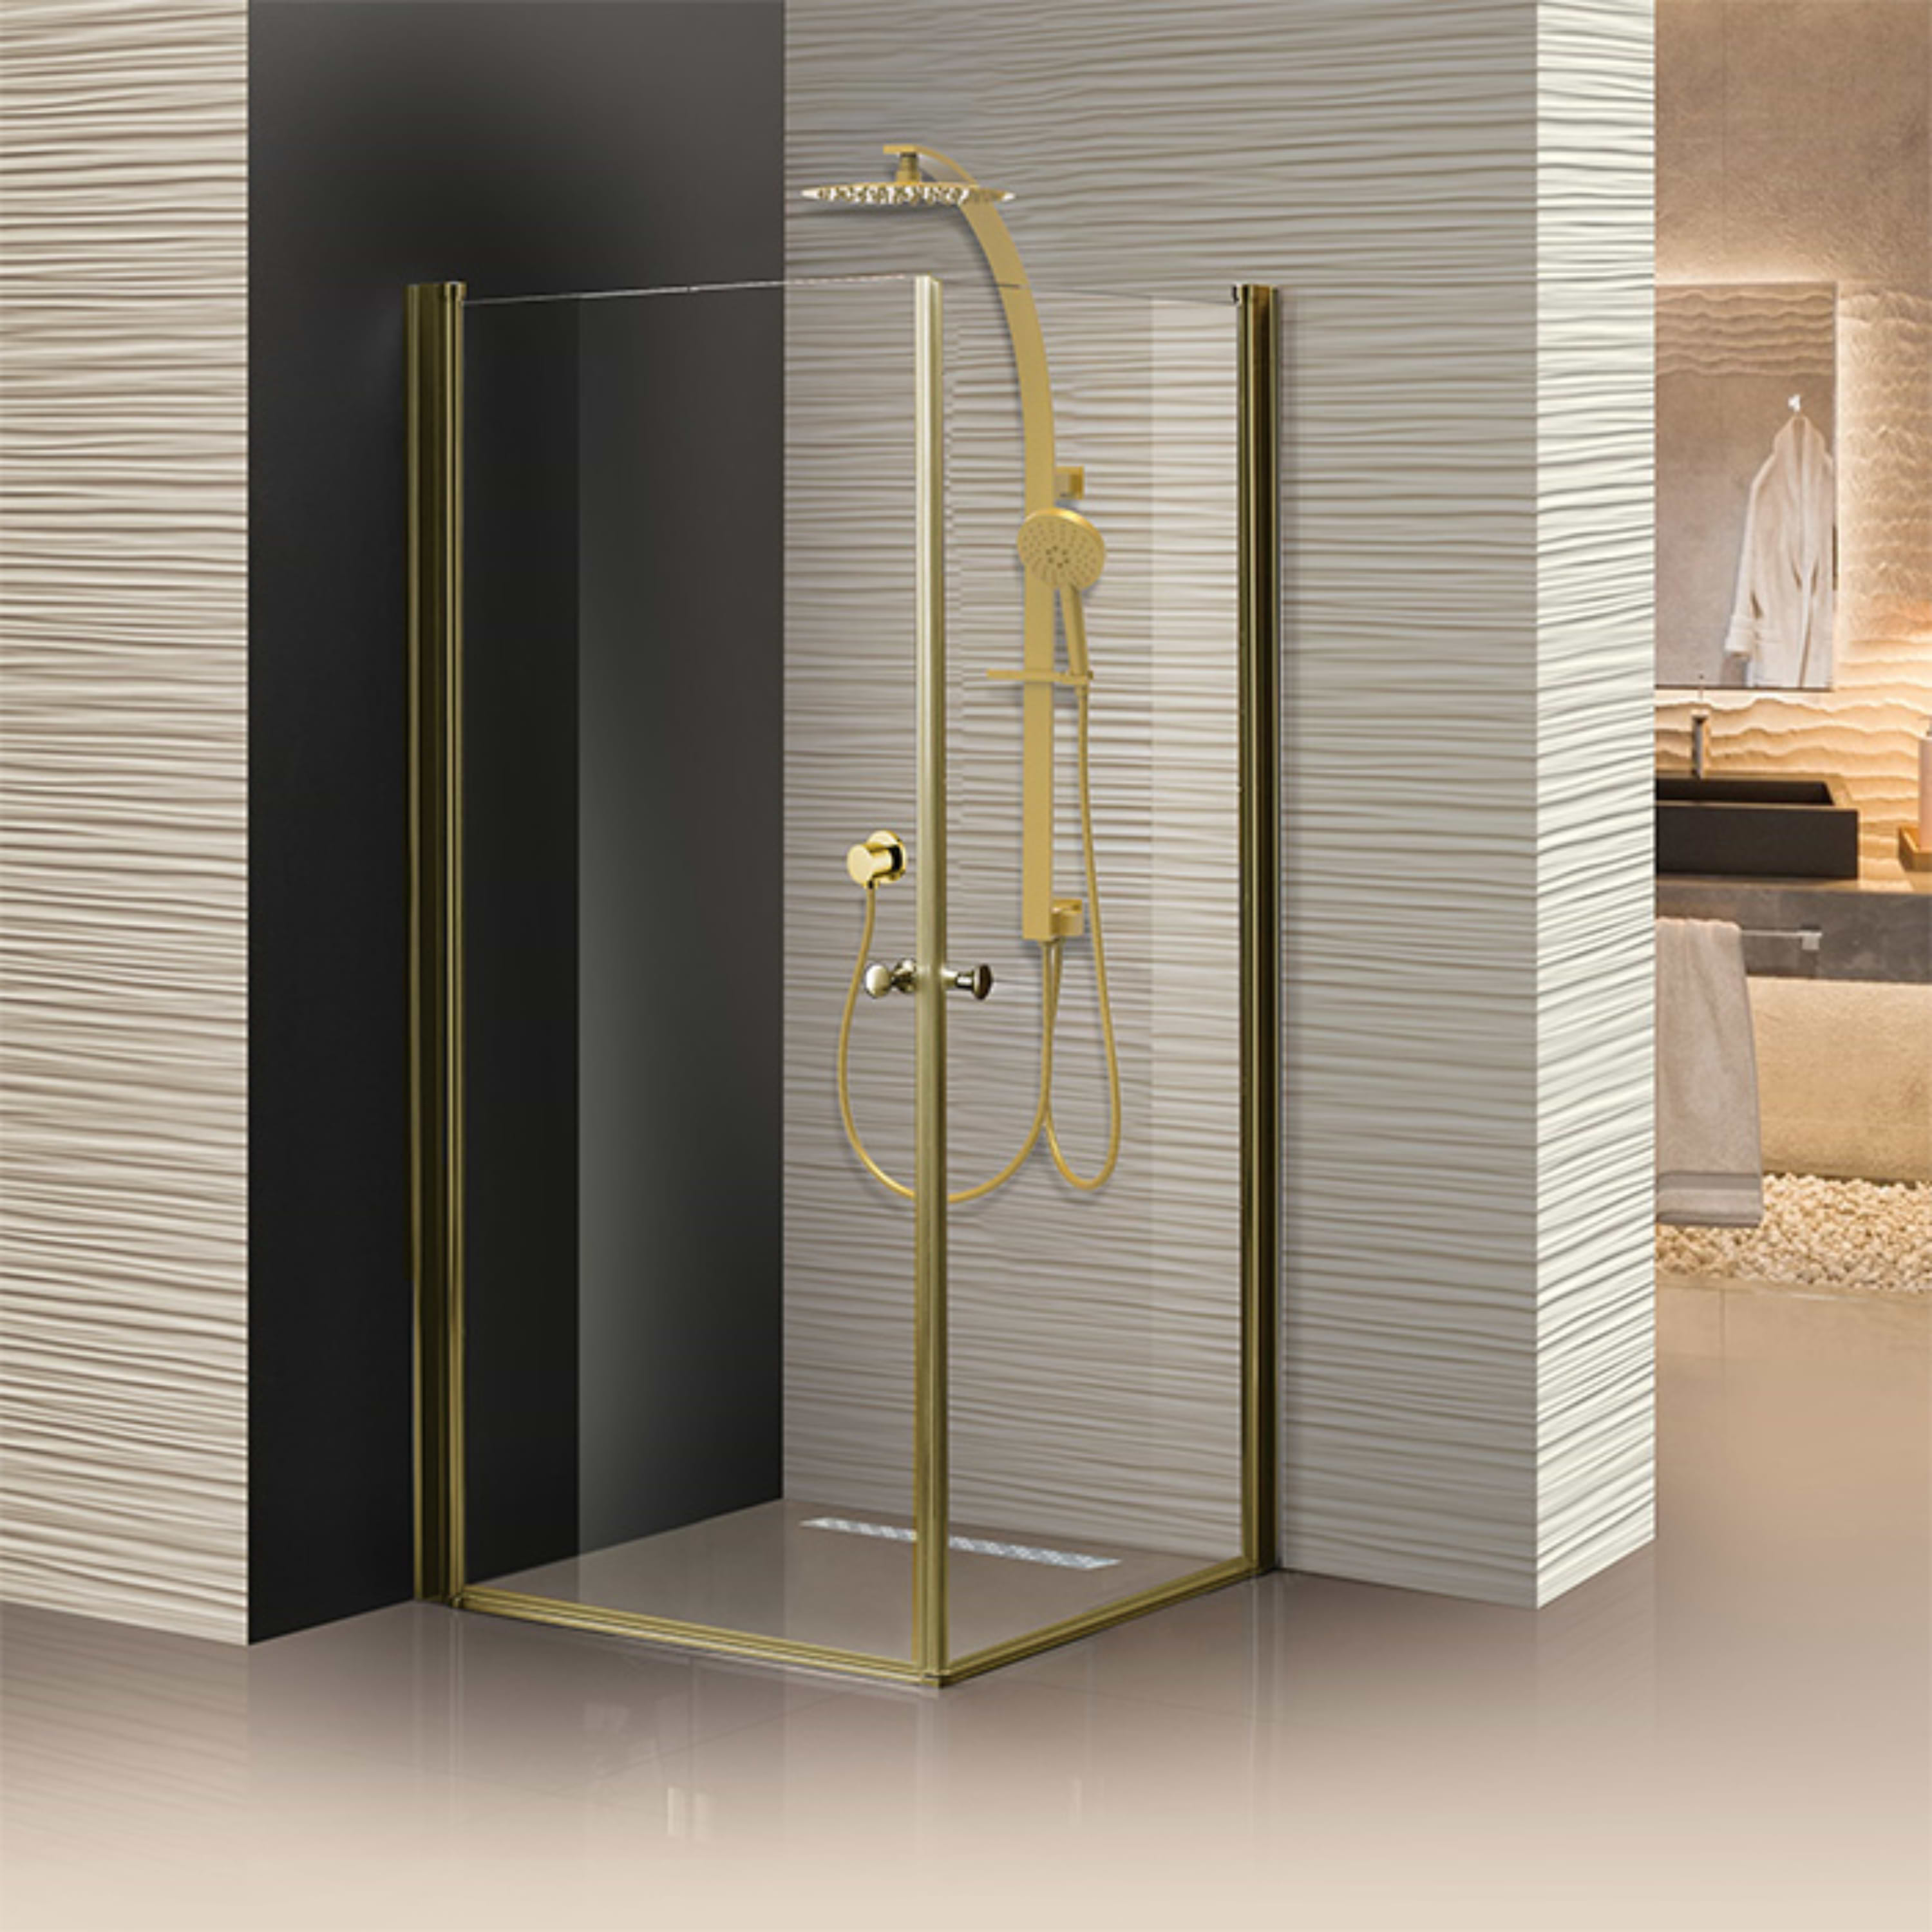 מקלחון פרזול זכוכית שקופה 87-90 ס"מ 405 Matina - צבע זהב